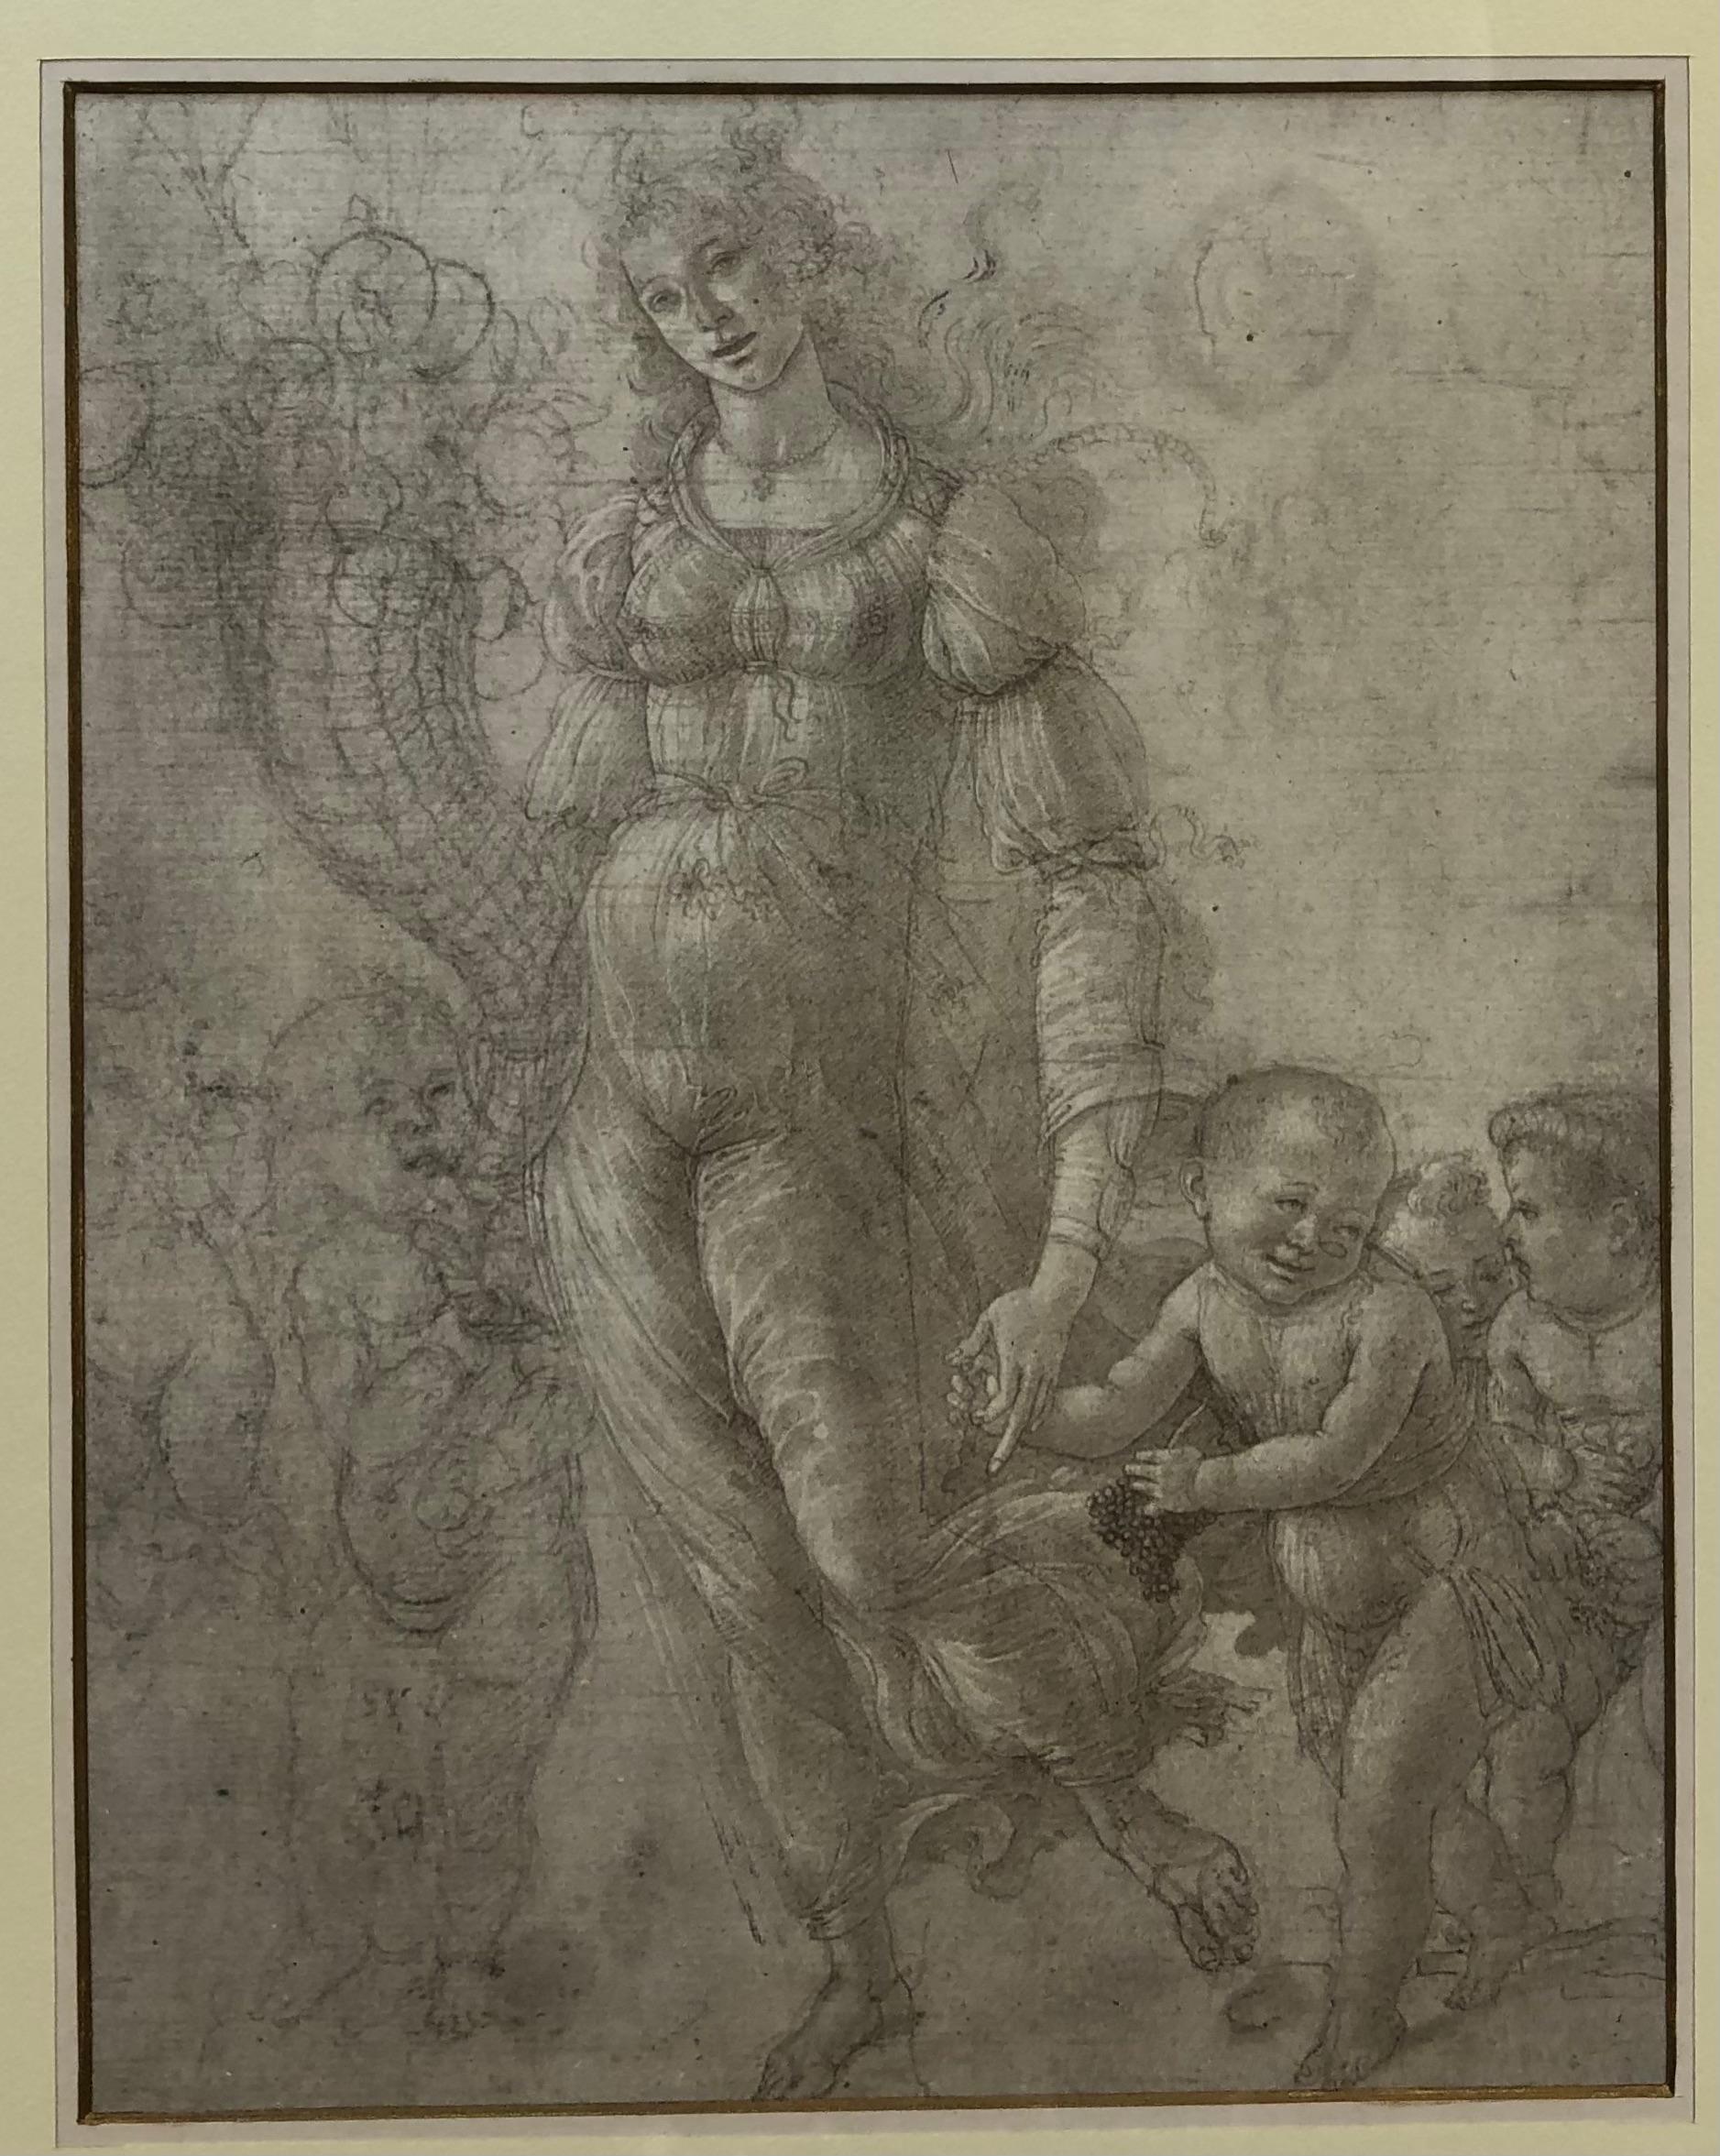 Un dessin néoclassique ludique d'une femme avec des enfants encadré par la Medici Society à Londres.
Présenté dans un cadre professionnel en bois doré. 

Mesures : 15 7/8